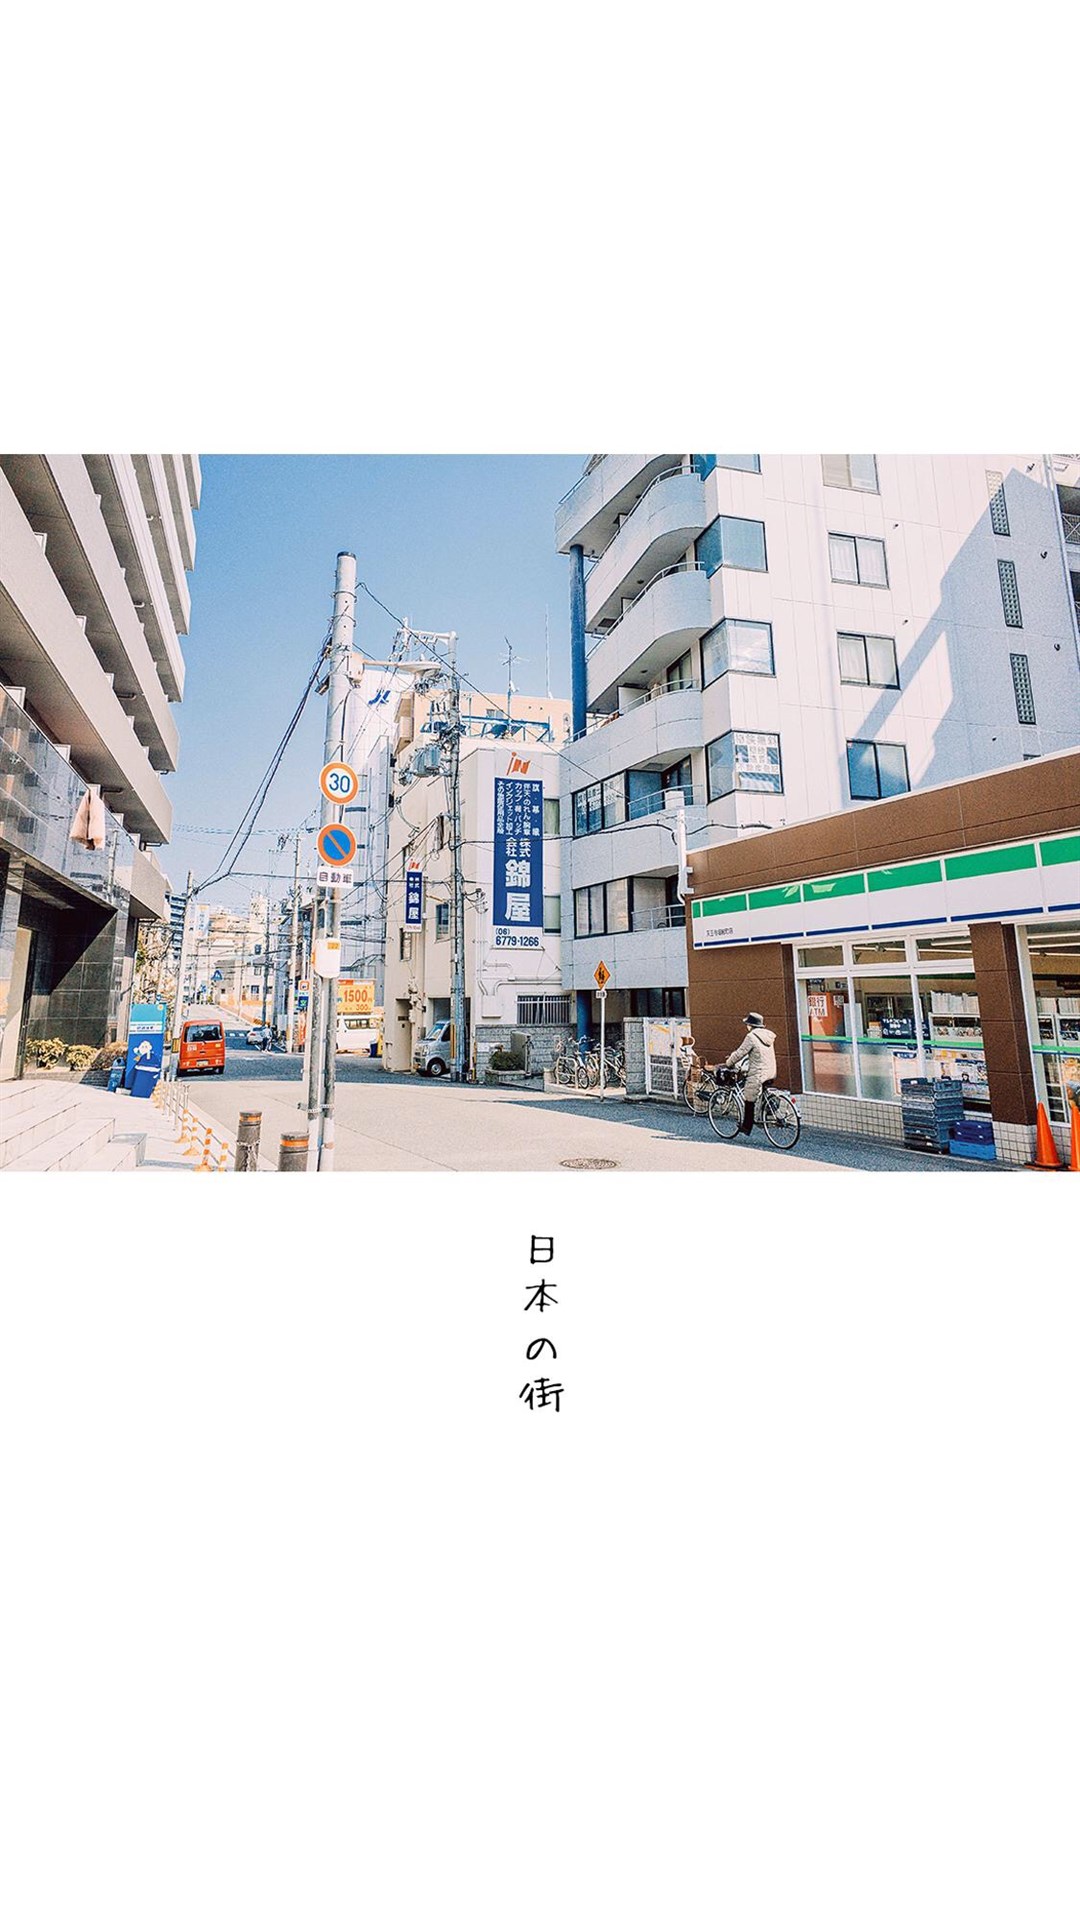 街景图片素材 清新简约日本街景风光手机壁纸(8)